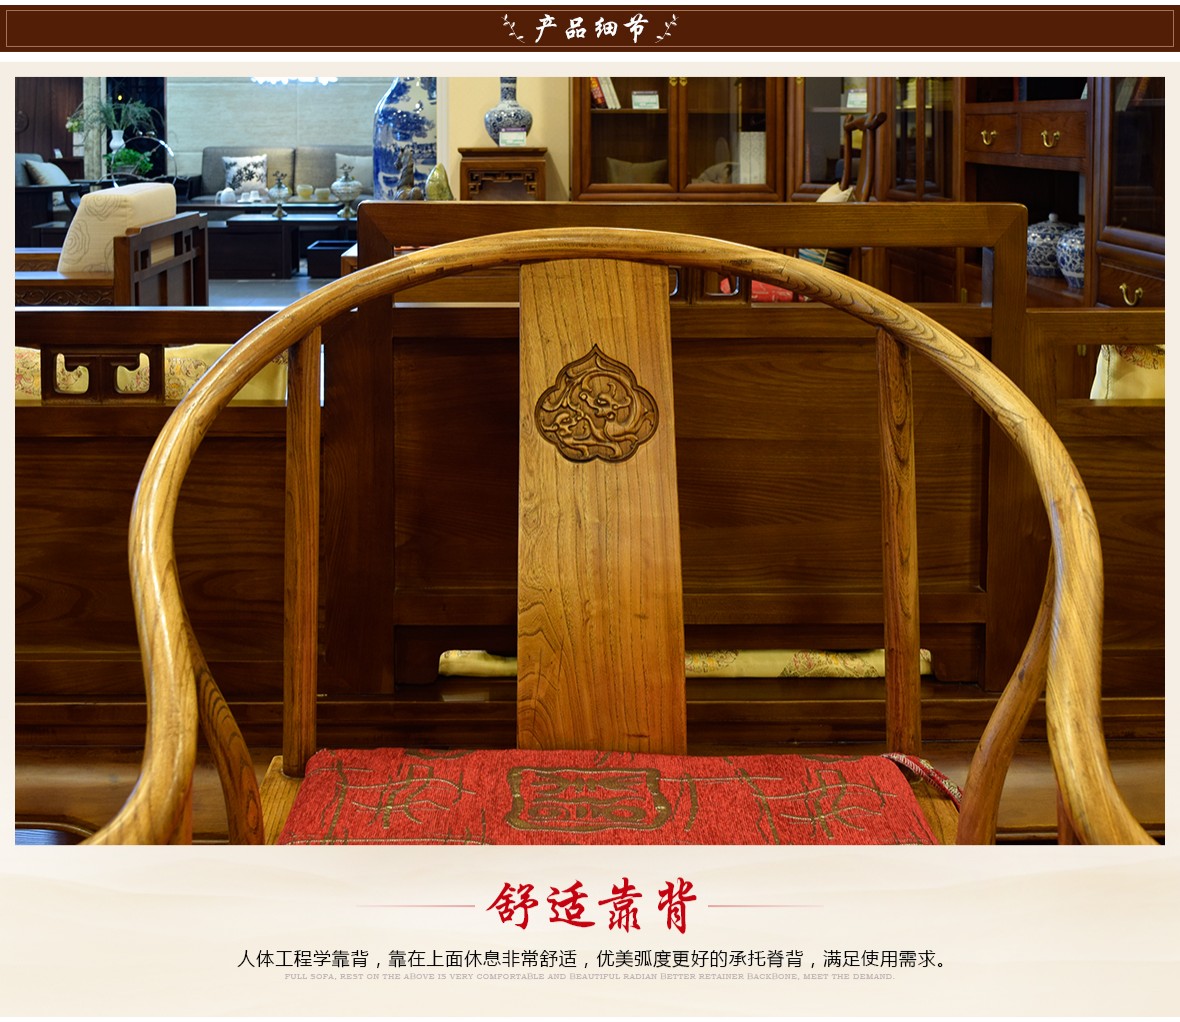 瀚明轩 HMX-1119型号中式古典风格榆木高圈椅 细节